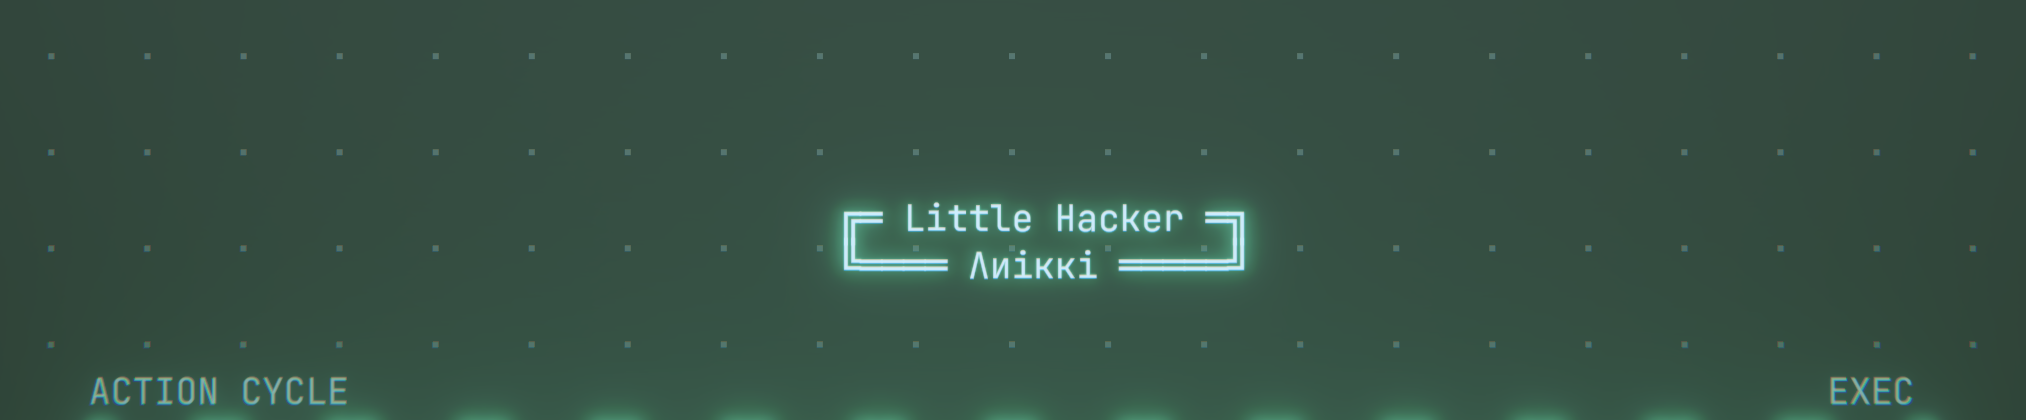 Little Hacker